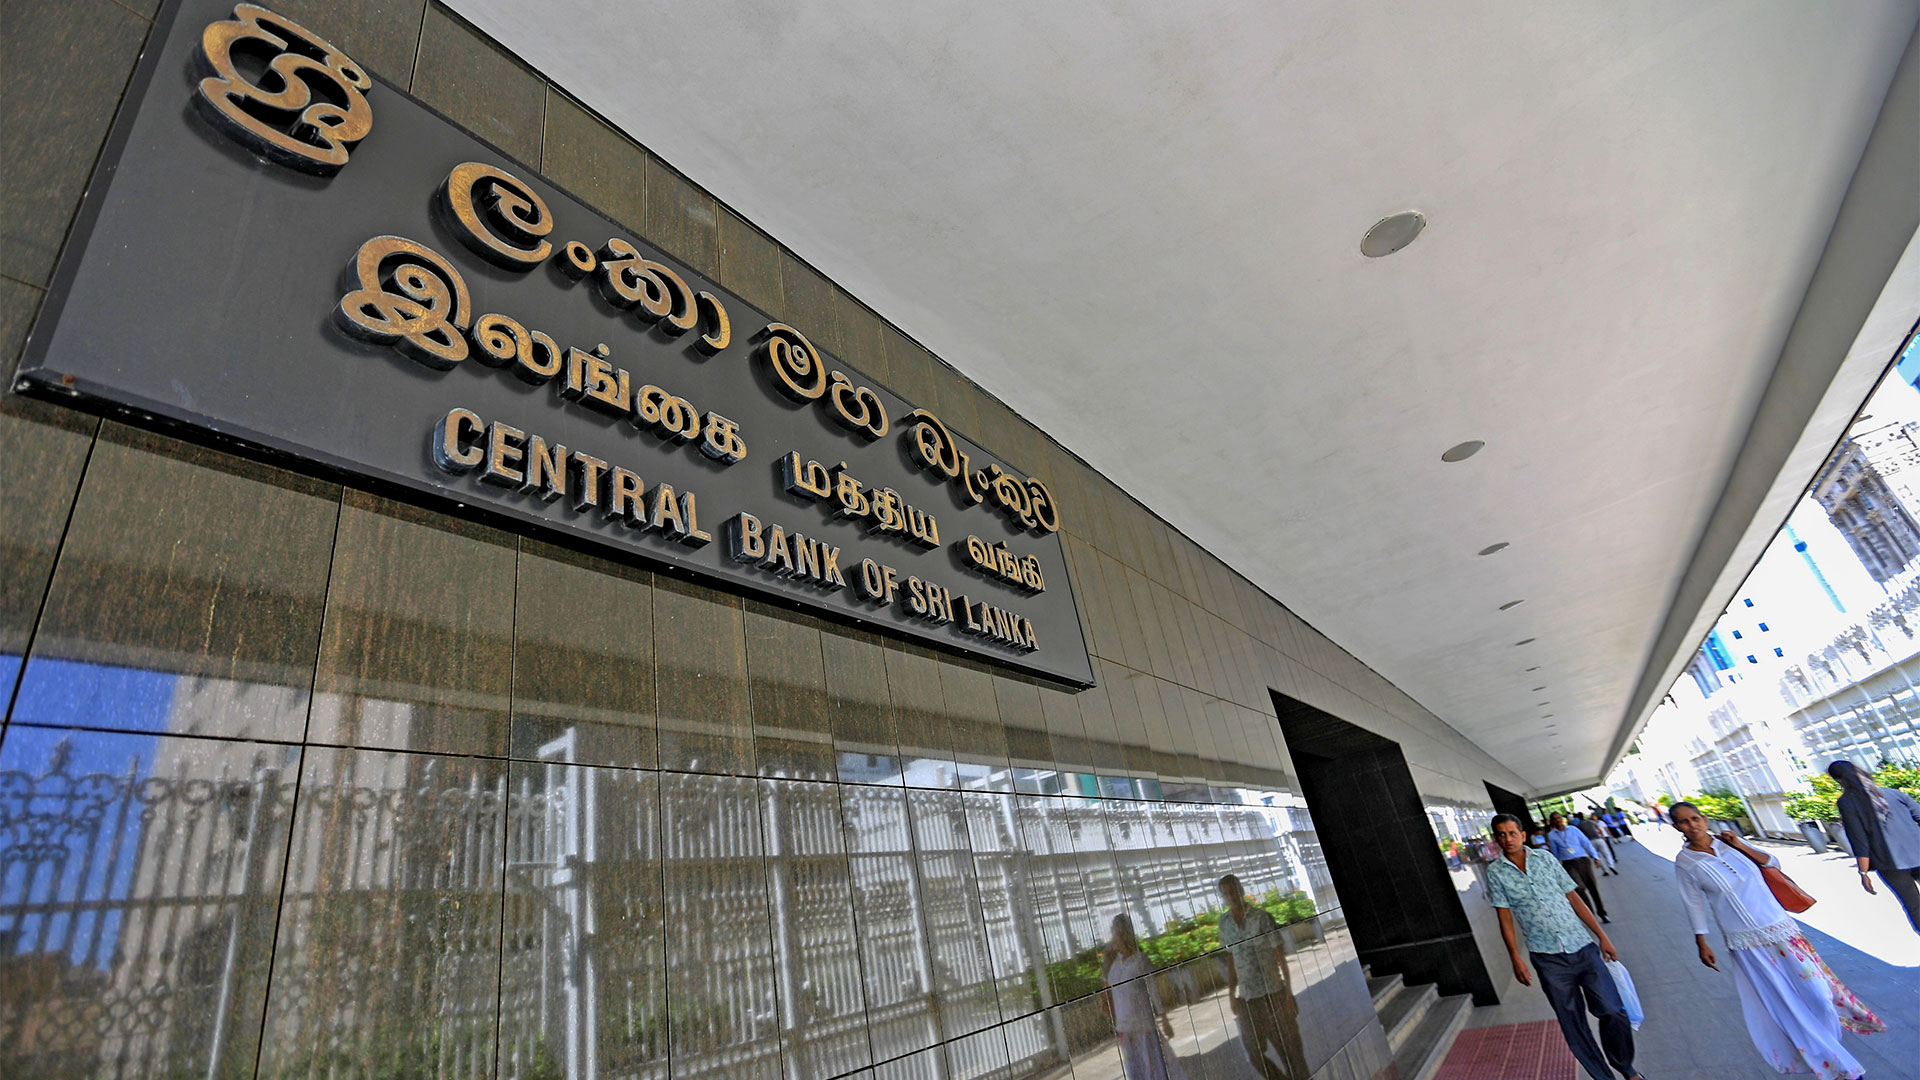 Zentralbank von Sri Lanka | picture alliance / NurPhoto